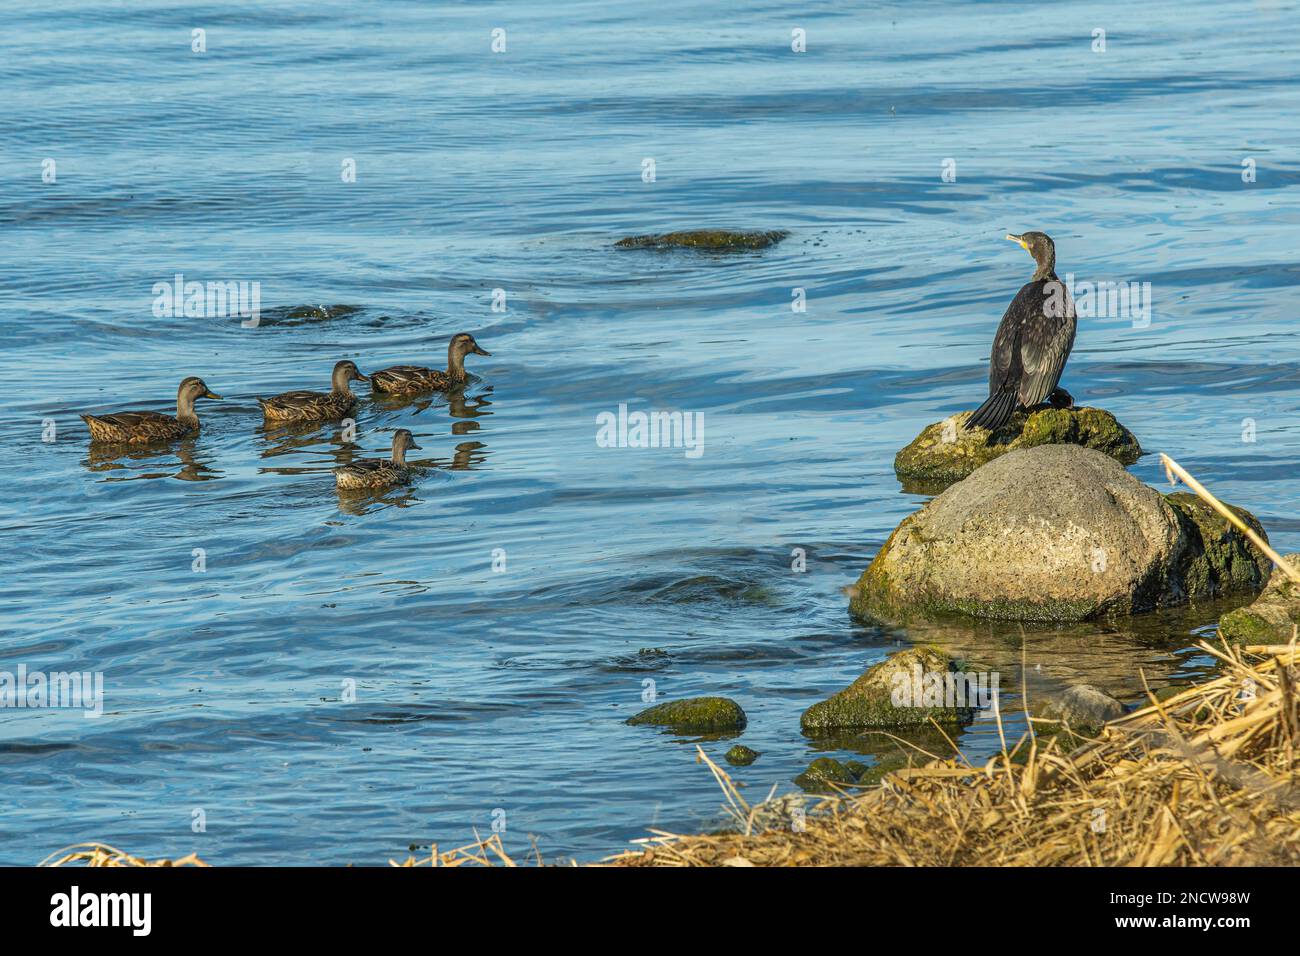 Eine Gruppe Enten grasen im Wasser des Bolsenasees. Ein Kormoran steht auf einem Felsen. Bolsena, Provinz Viterbo, Latium, Italien, Europa Stockfoto